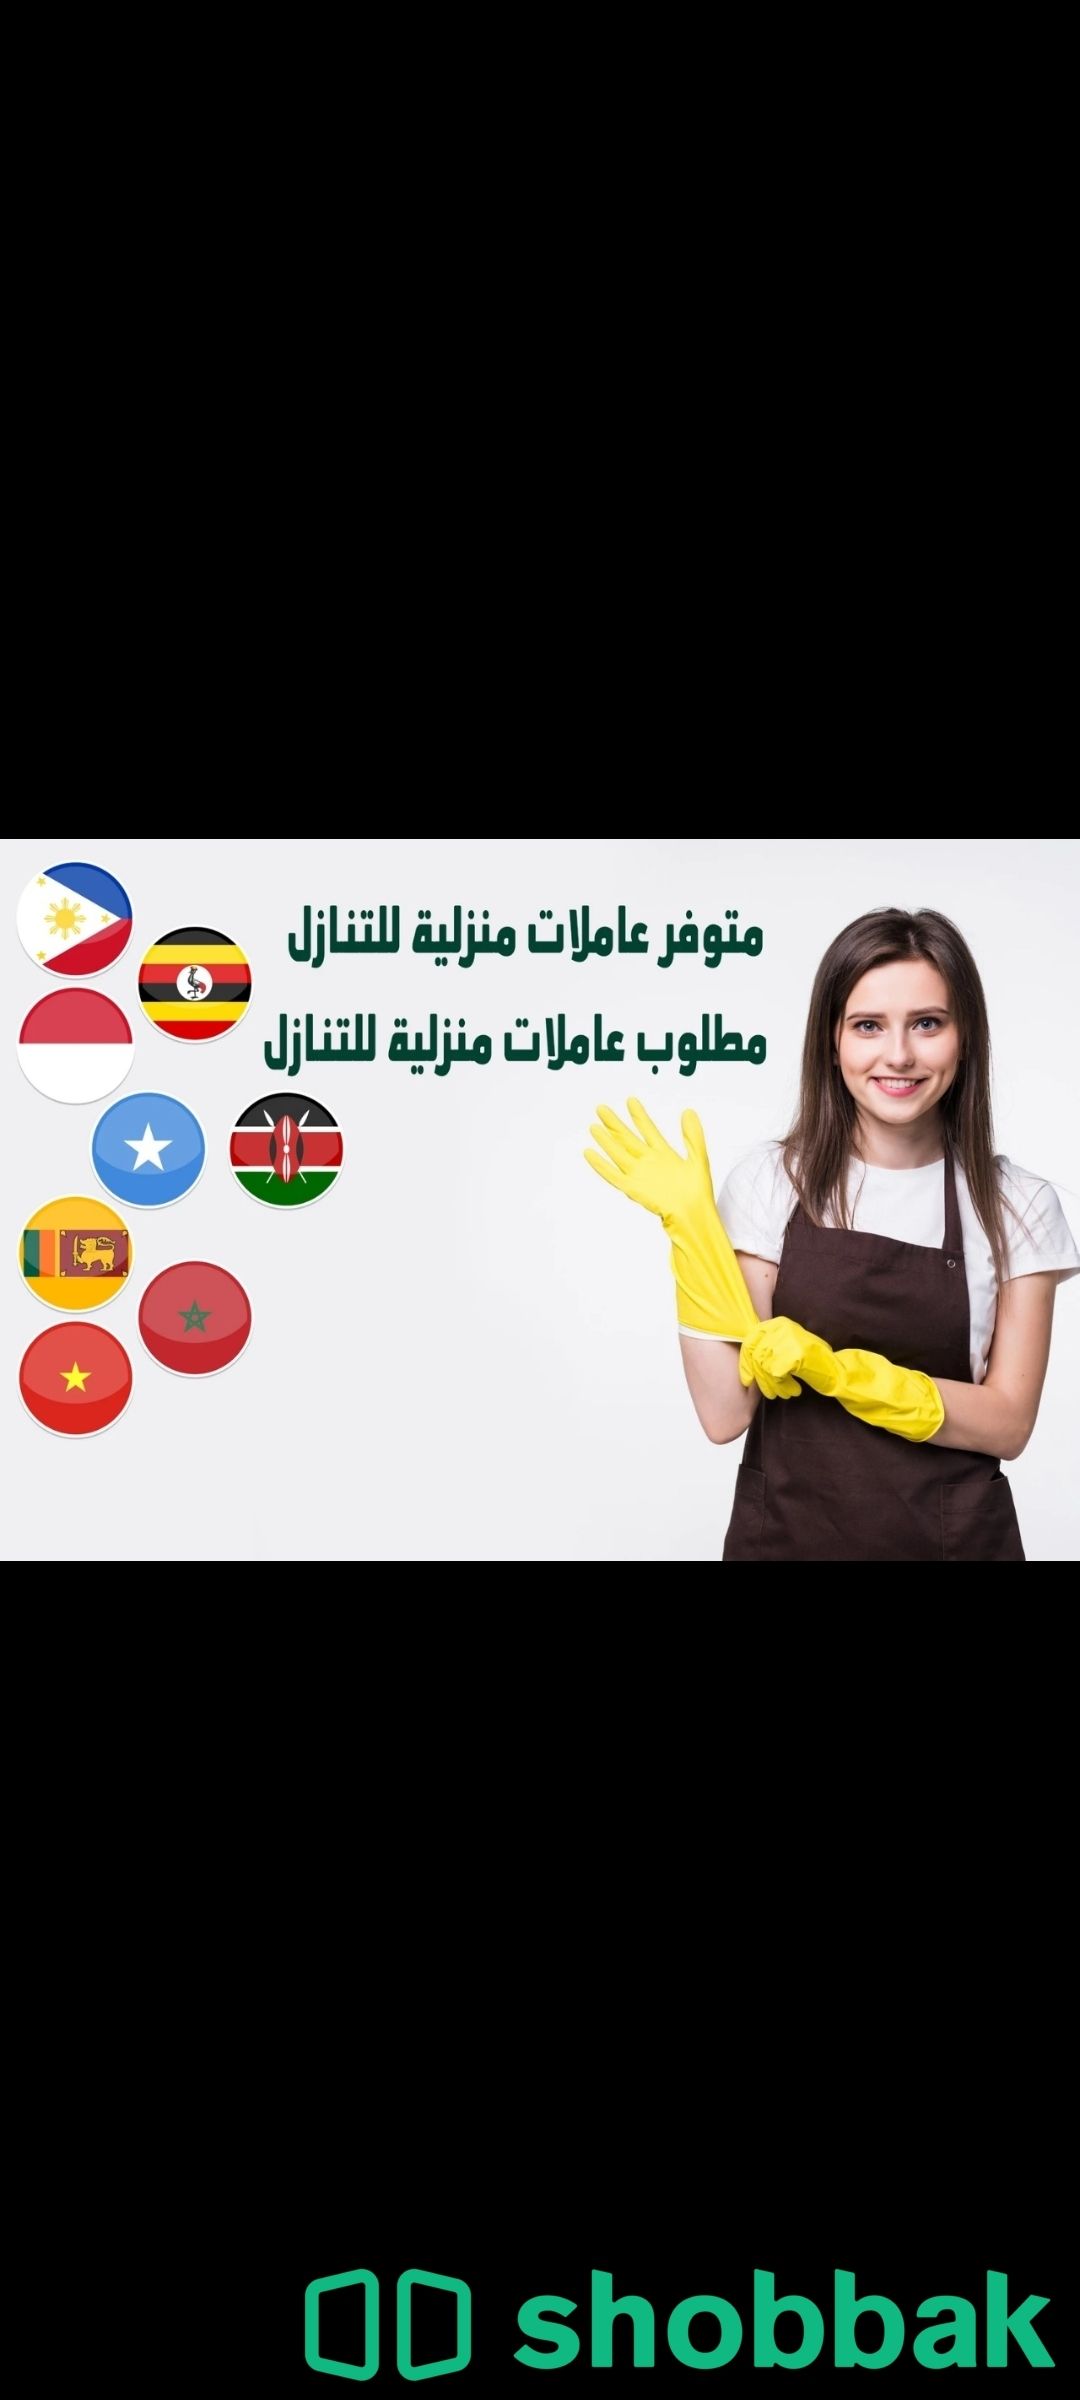 يوجد ومطلوب عاملات وطباخات للتنازل بافضل الاسعار 0536747079 شباك السعودية